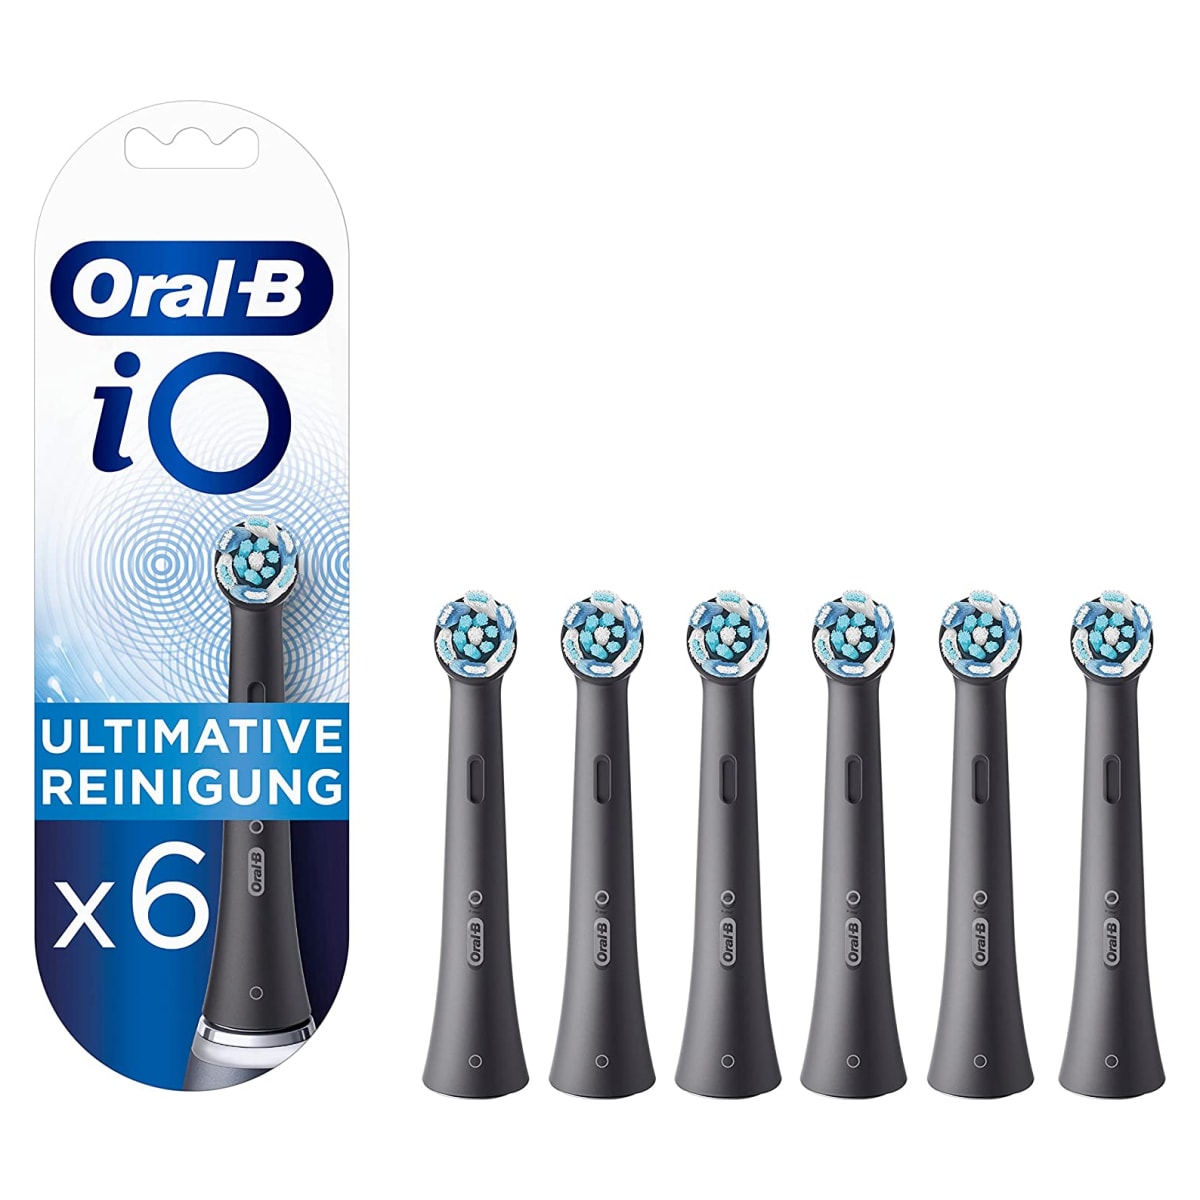 Oral-B iO RB CB-6 Ultimative Reinigung black Ersatzbürsten